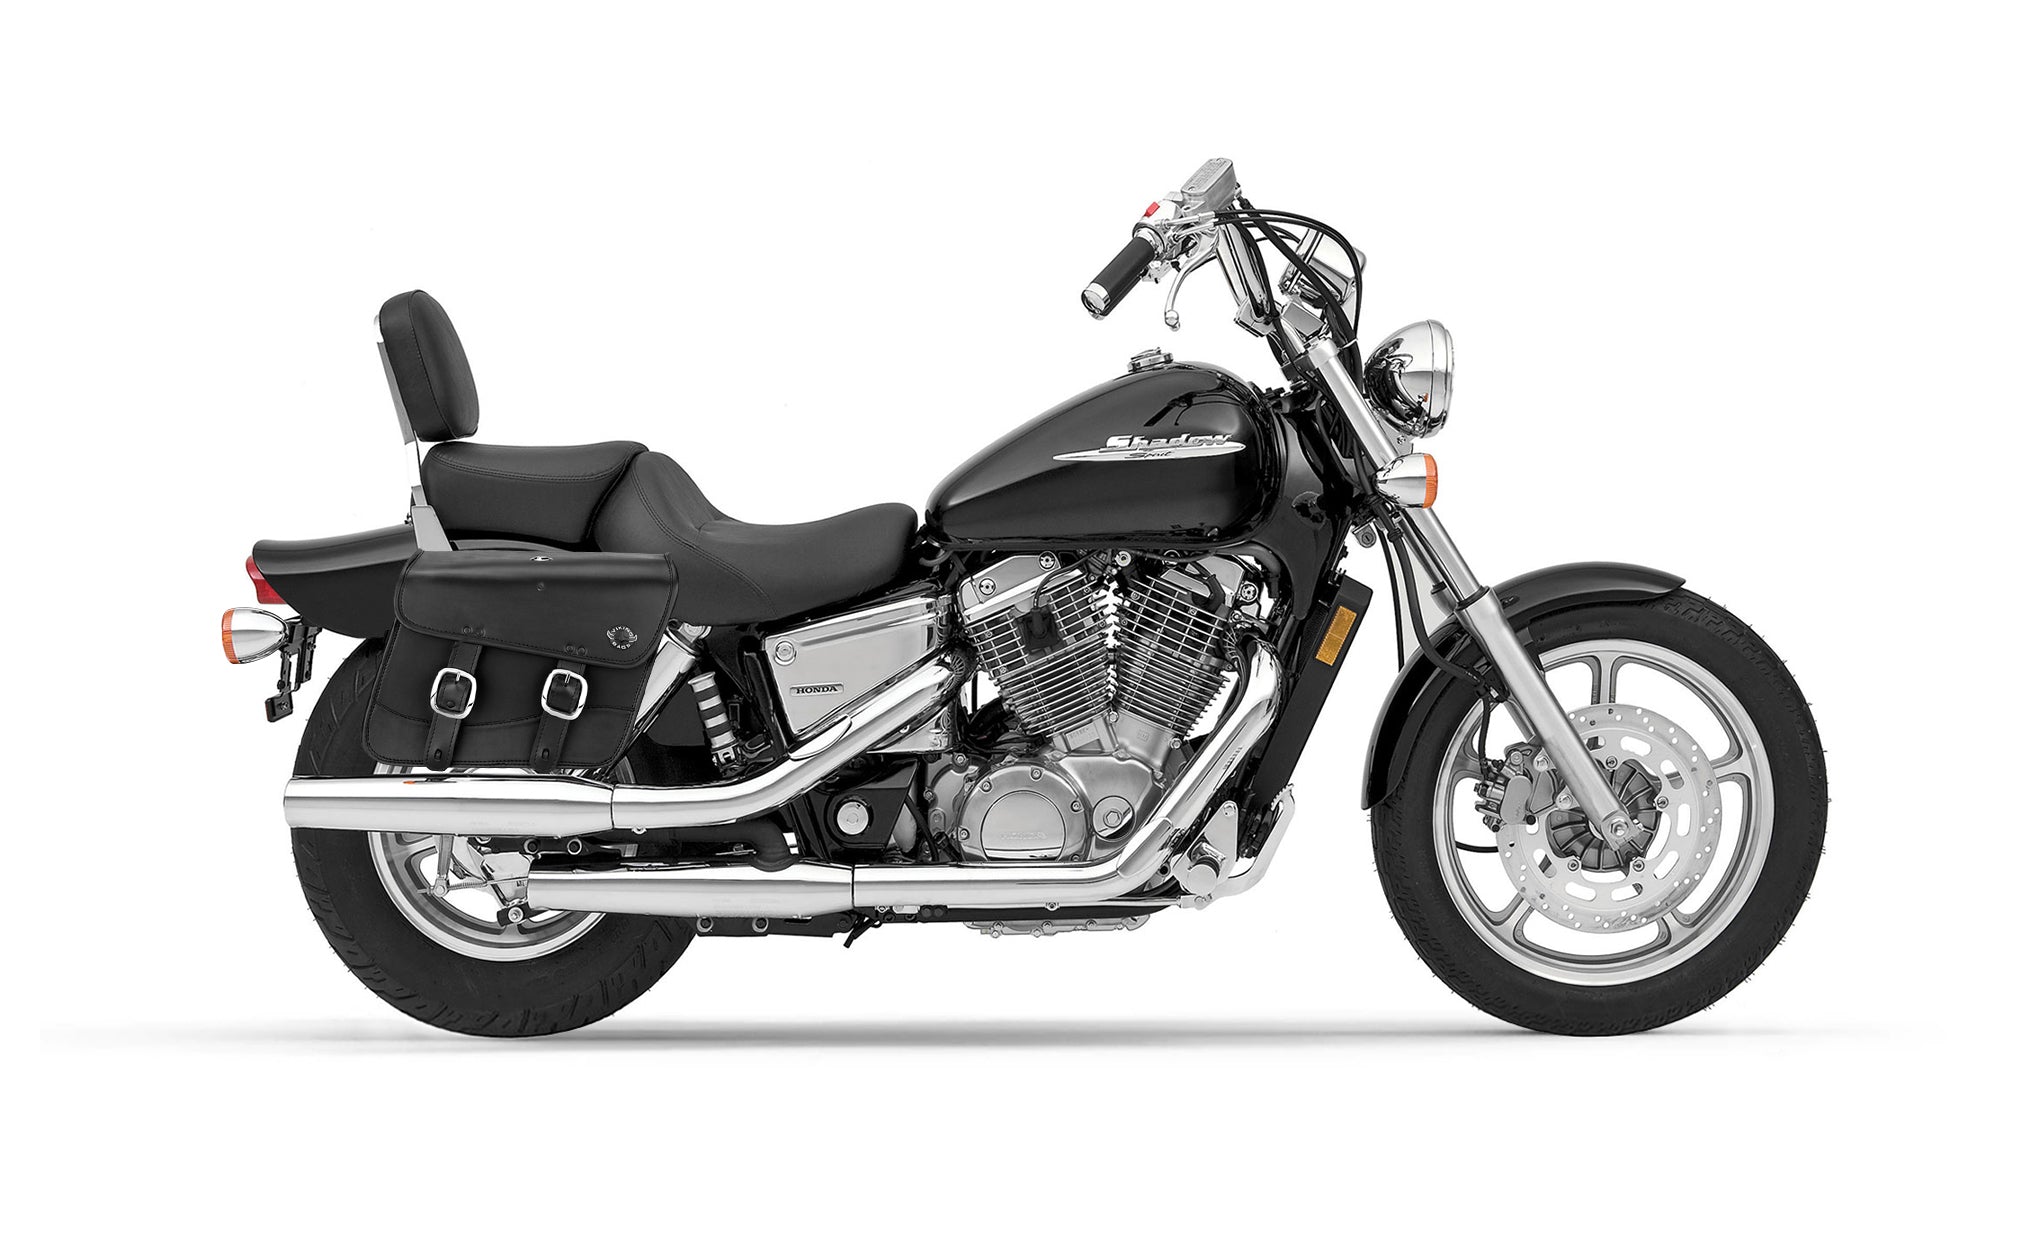 20L - Thor Medium Honda Shadow 1100 Spirit Leather Motorcycle Saddlebags @expand